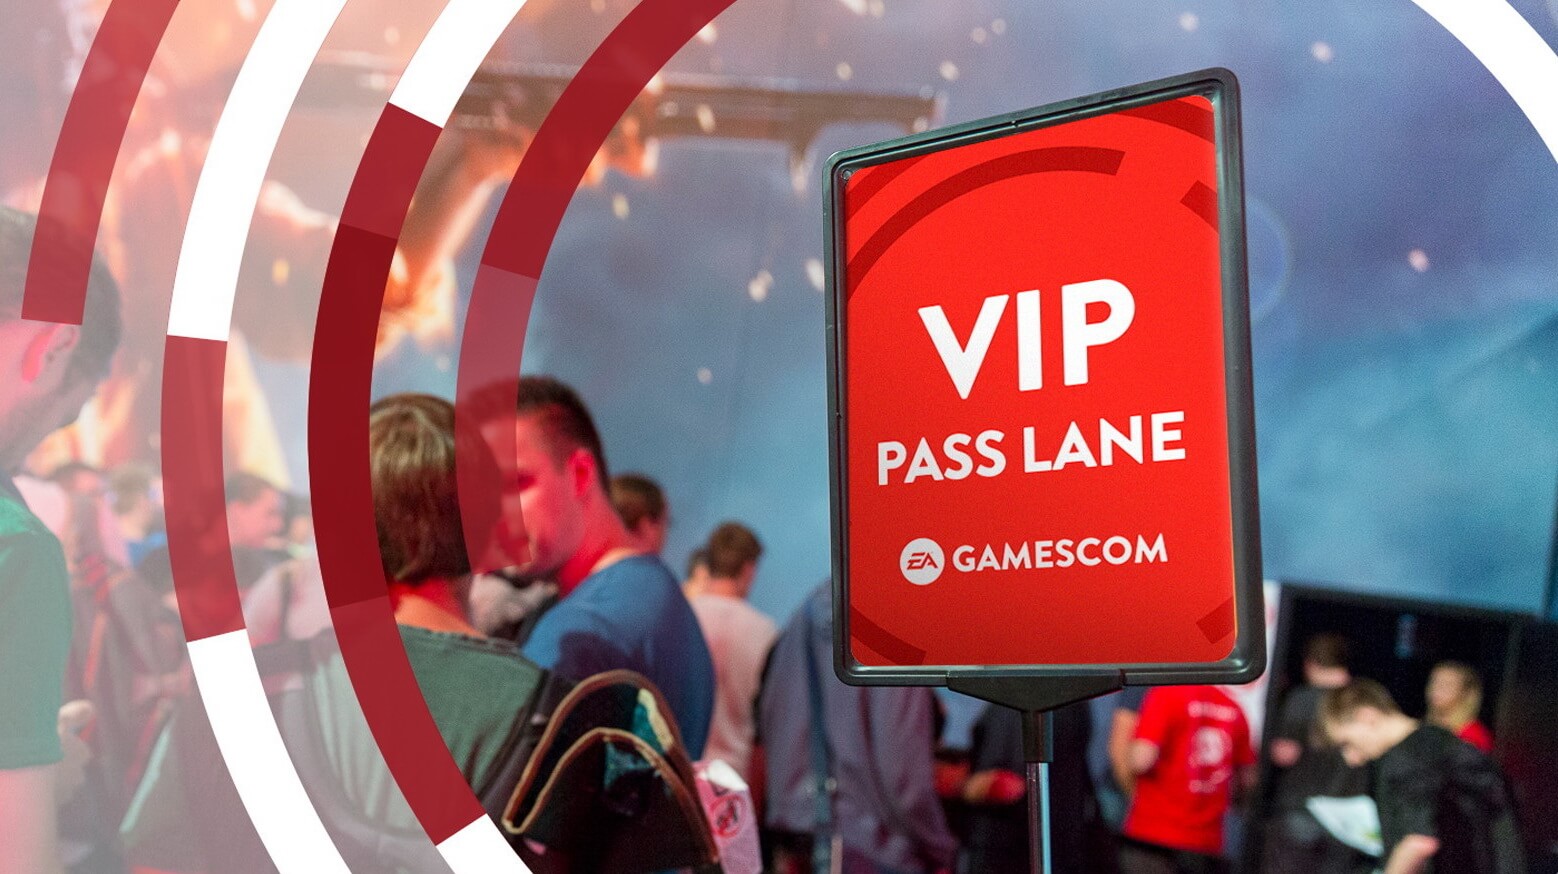 Gamescom VIP Pass lane